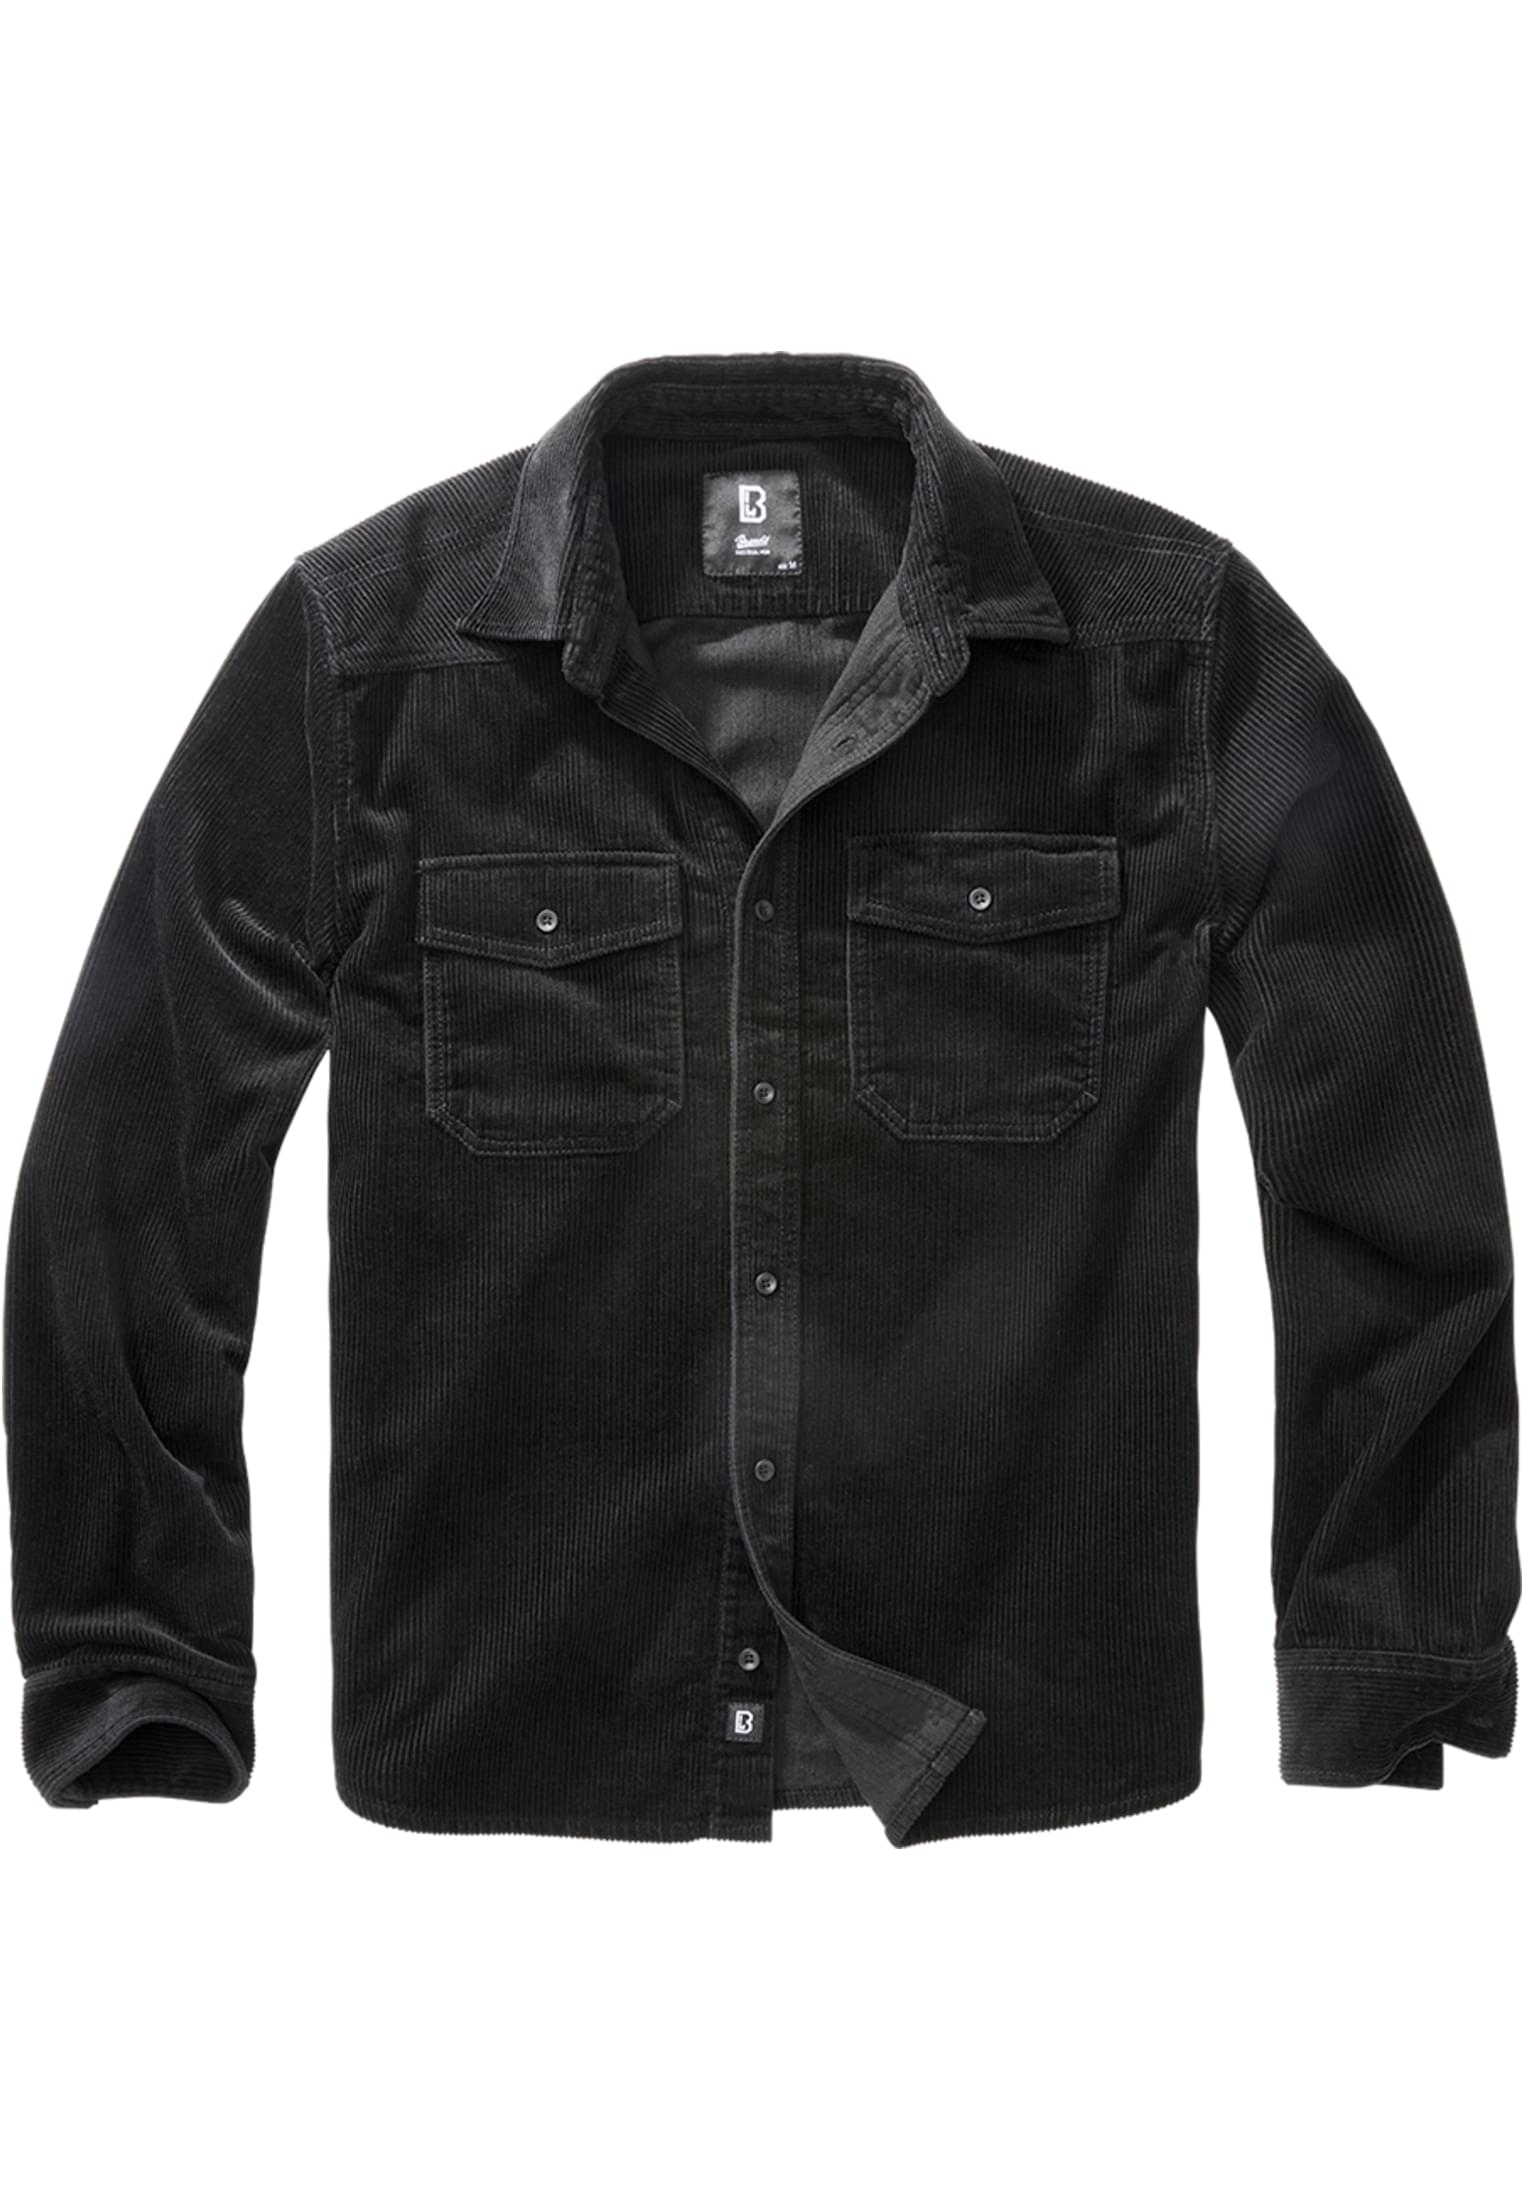 Corduroy classic long-sleeved shirt black